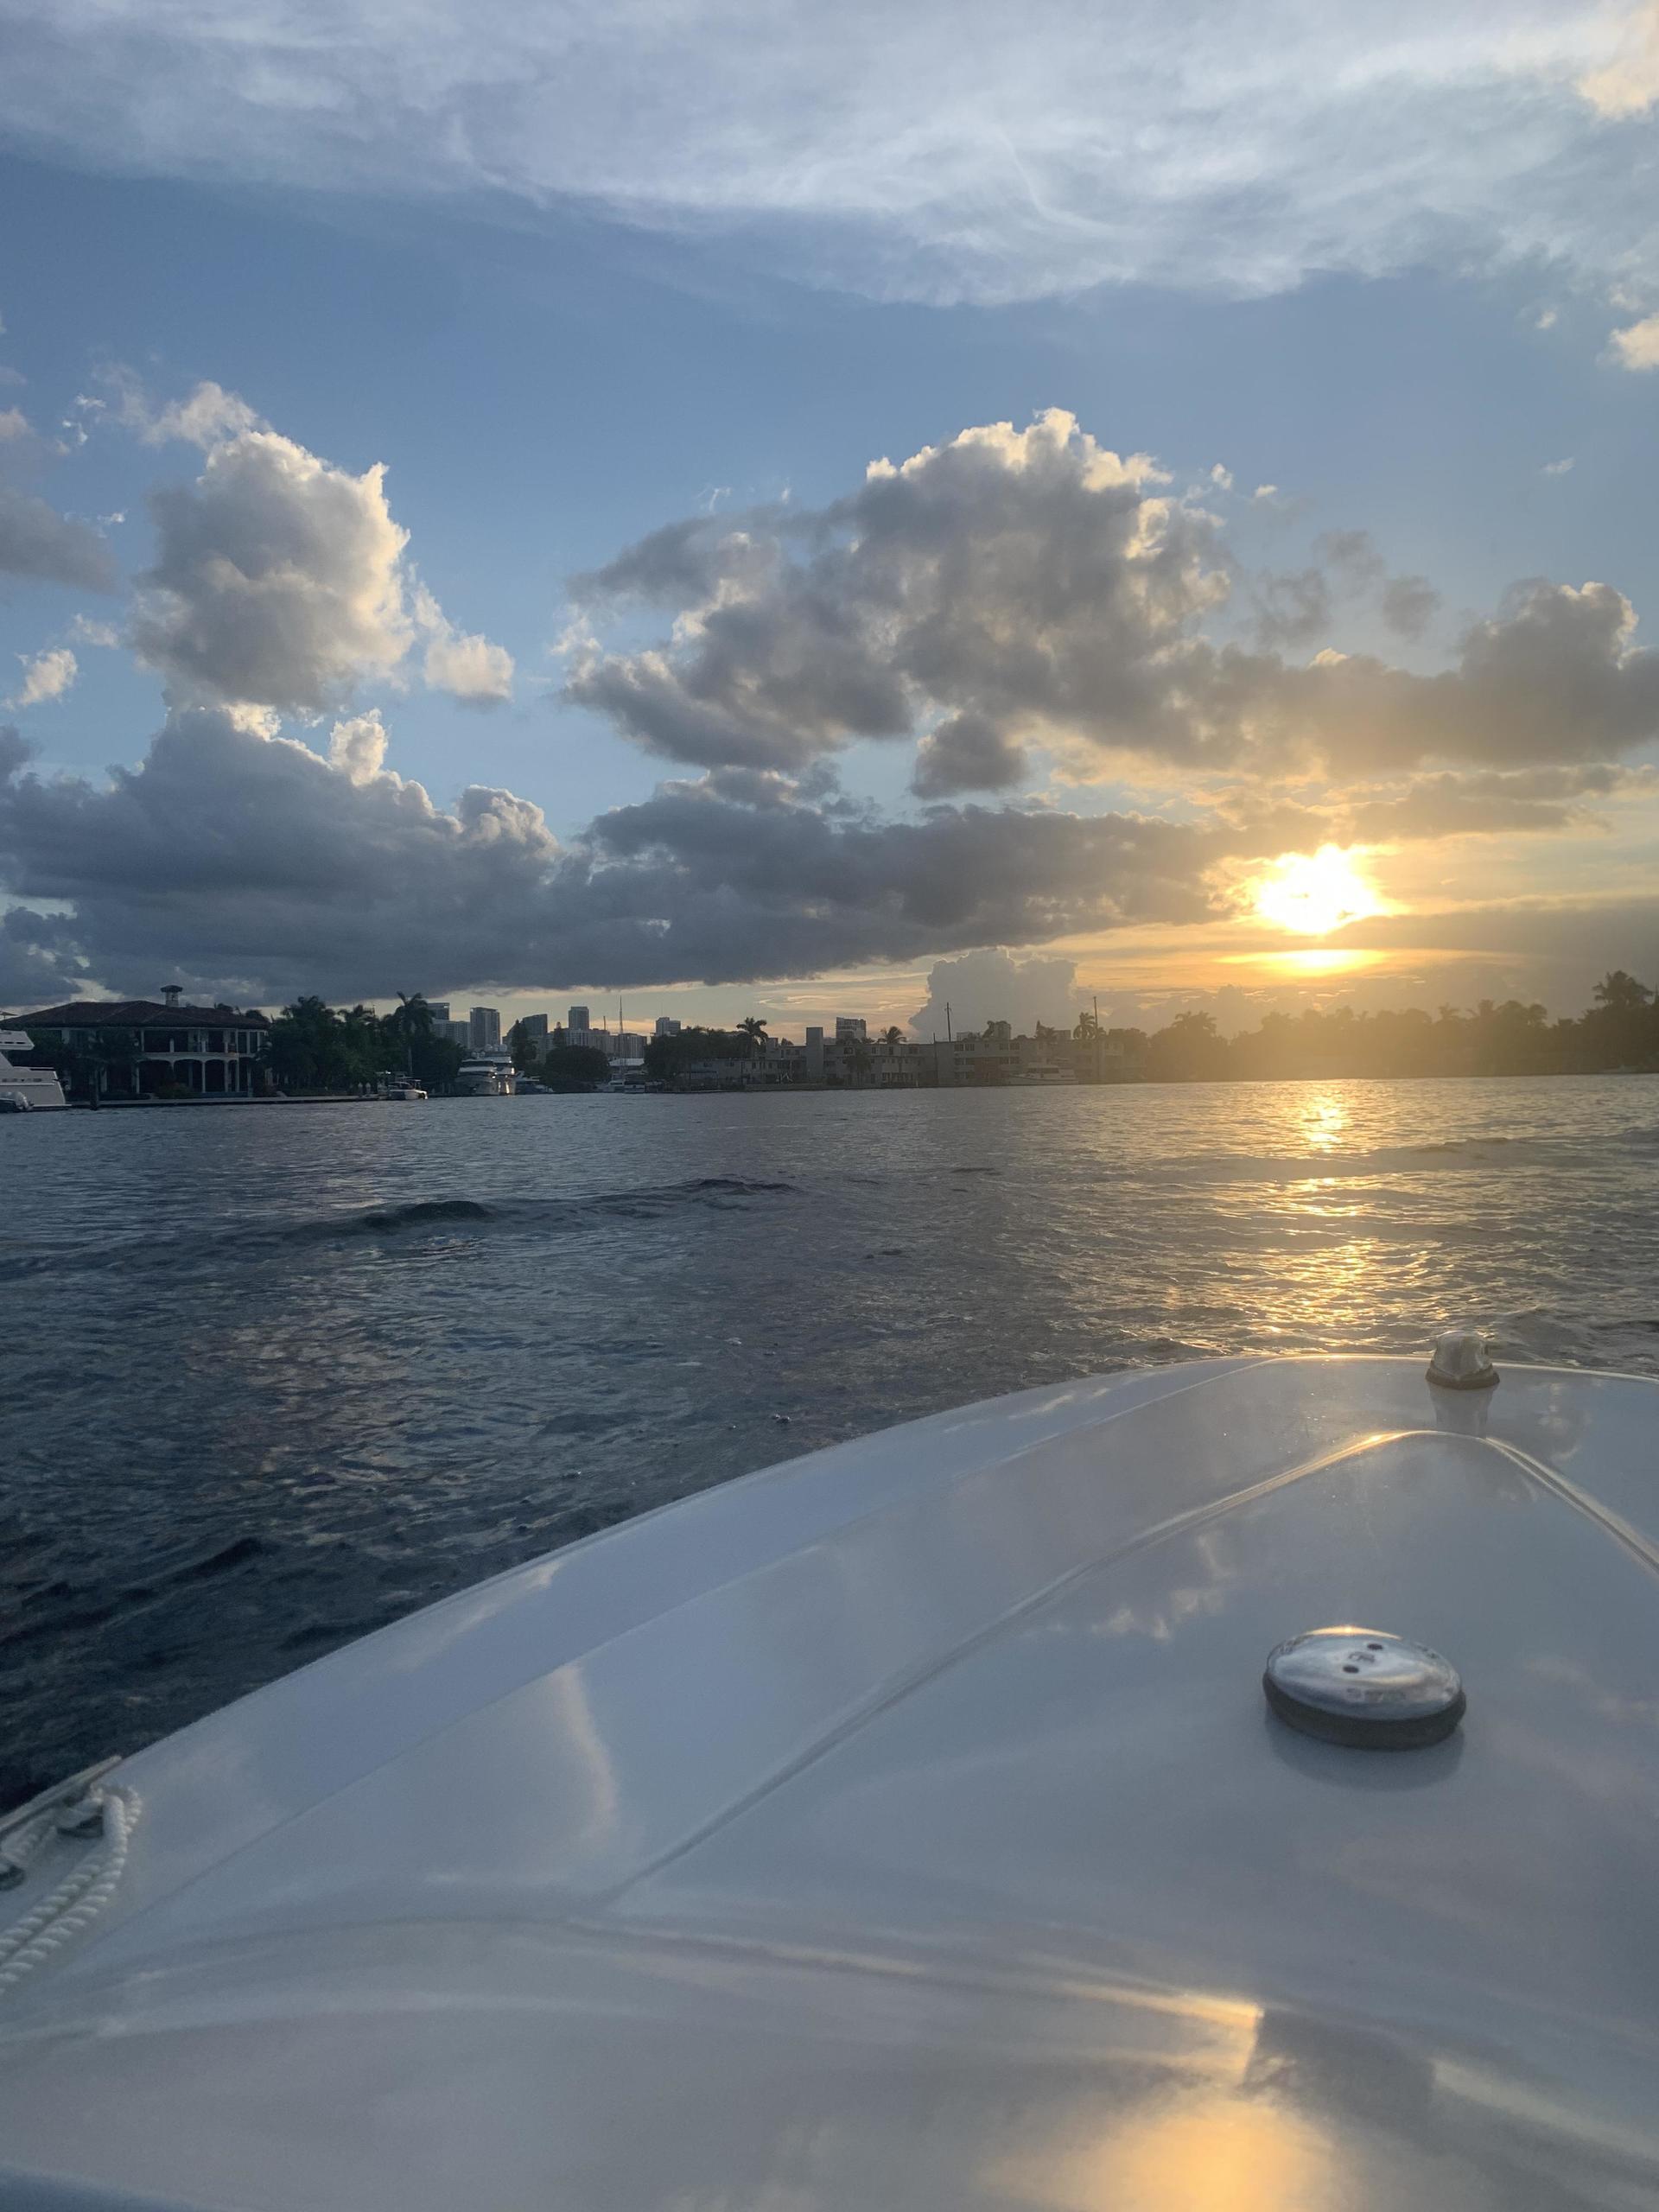 Mini-Powerboat Rentals in Fort Lauderdale